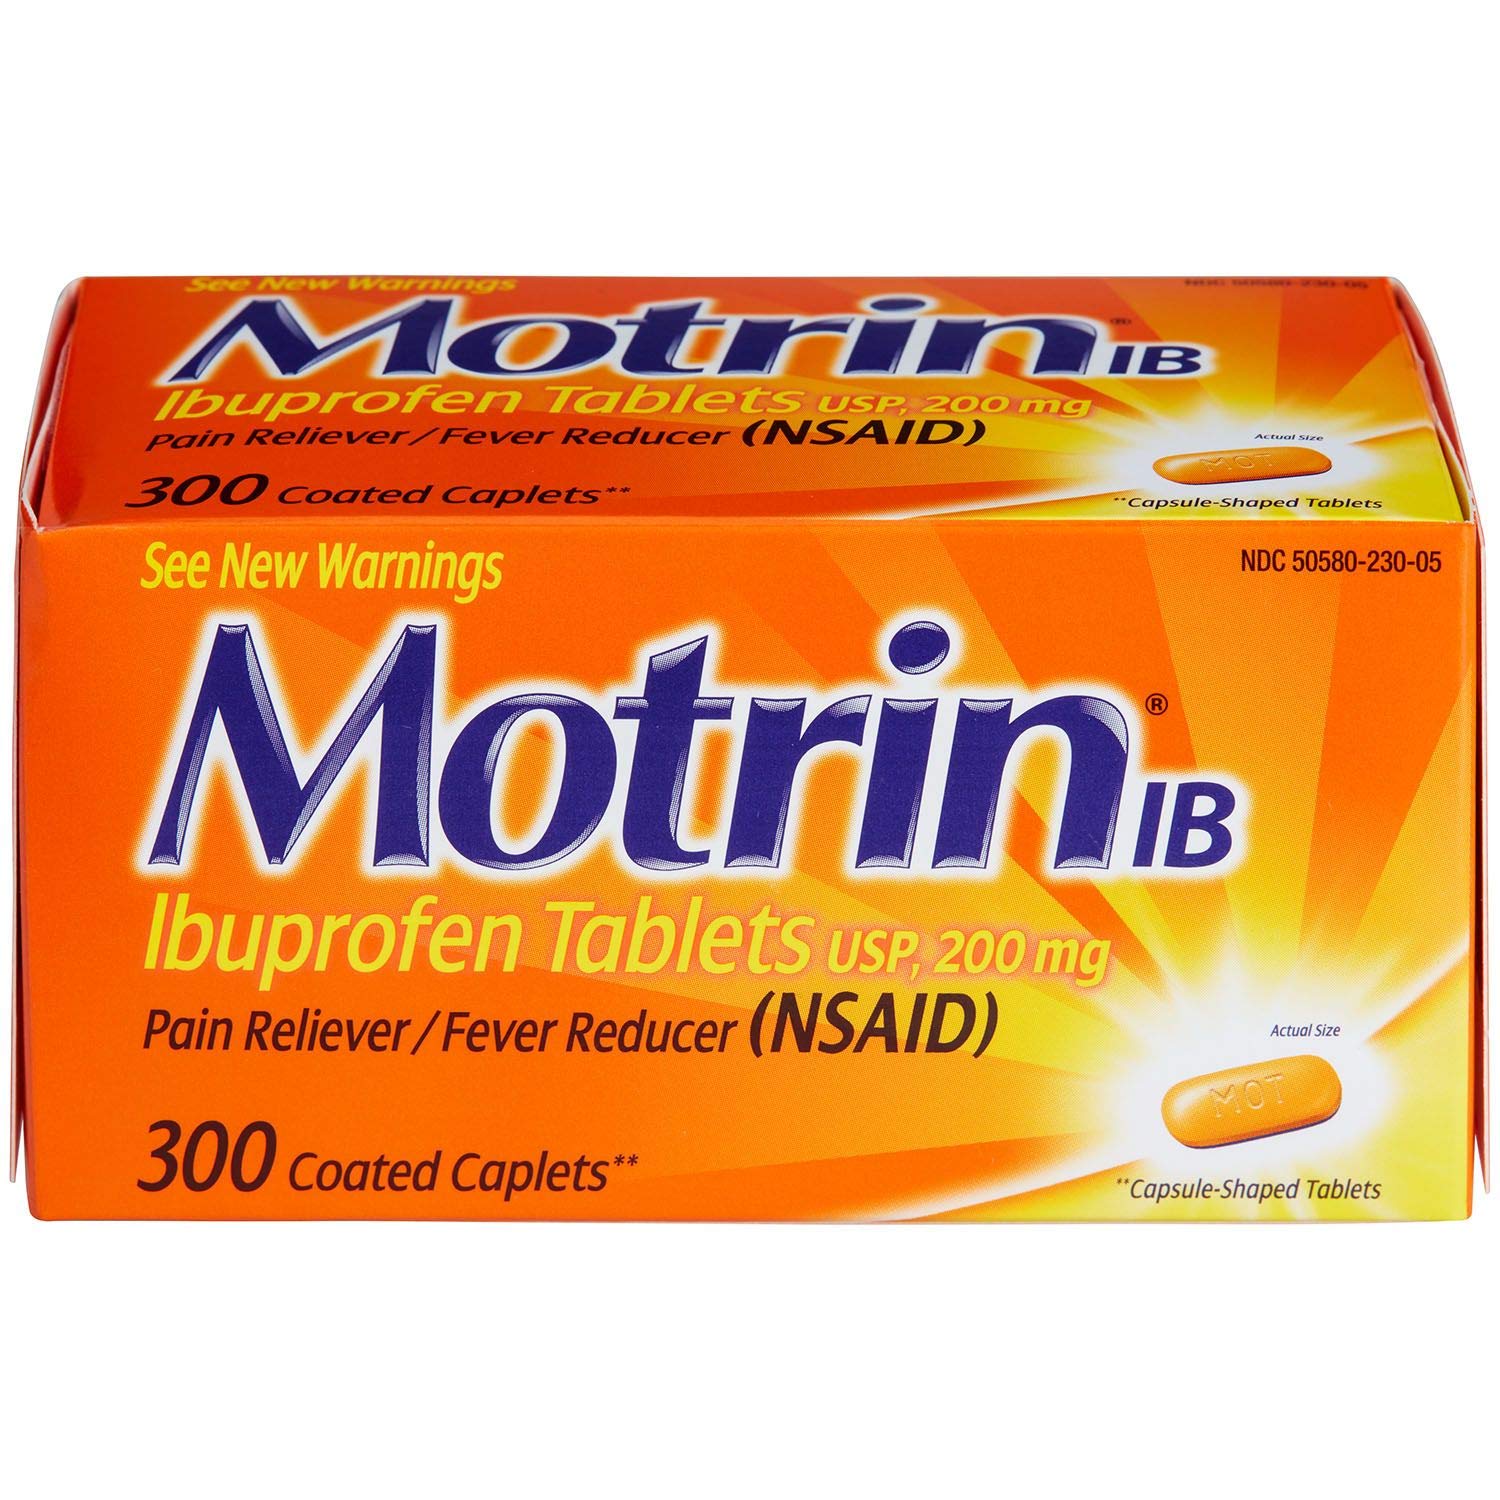 Motrin IB - image 0